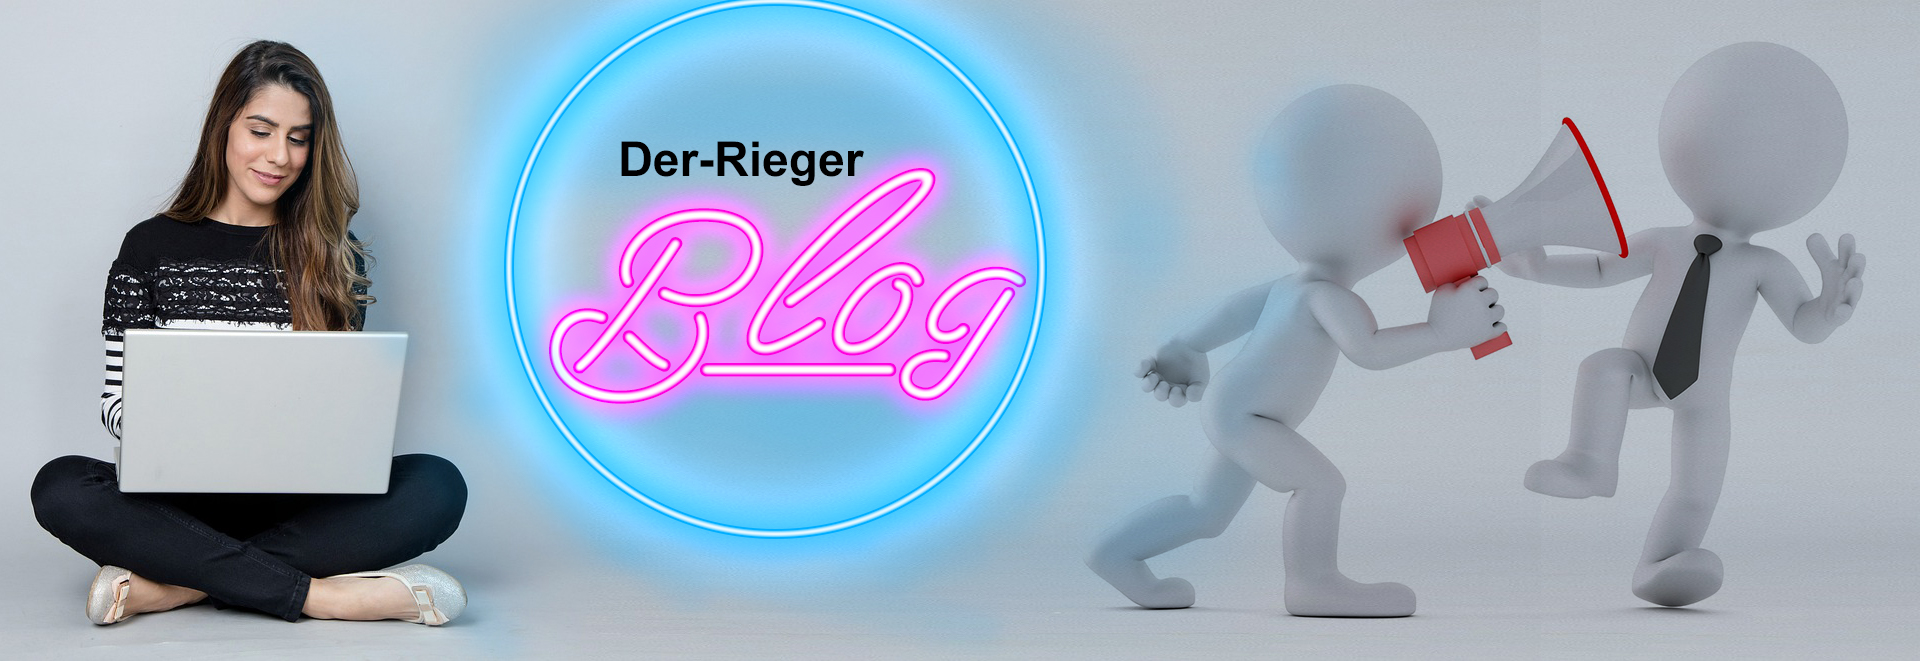 Der-Rieger Blog